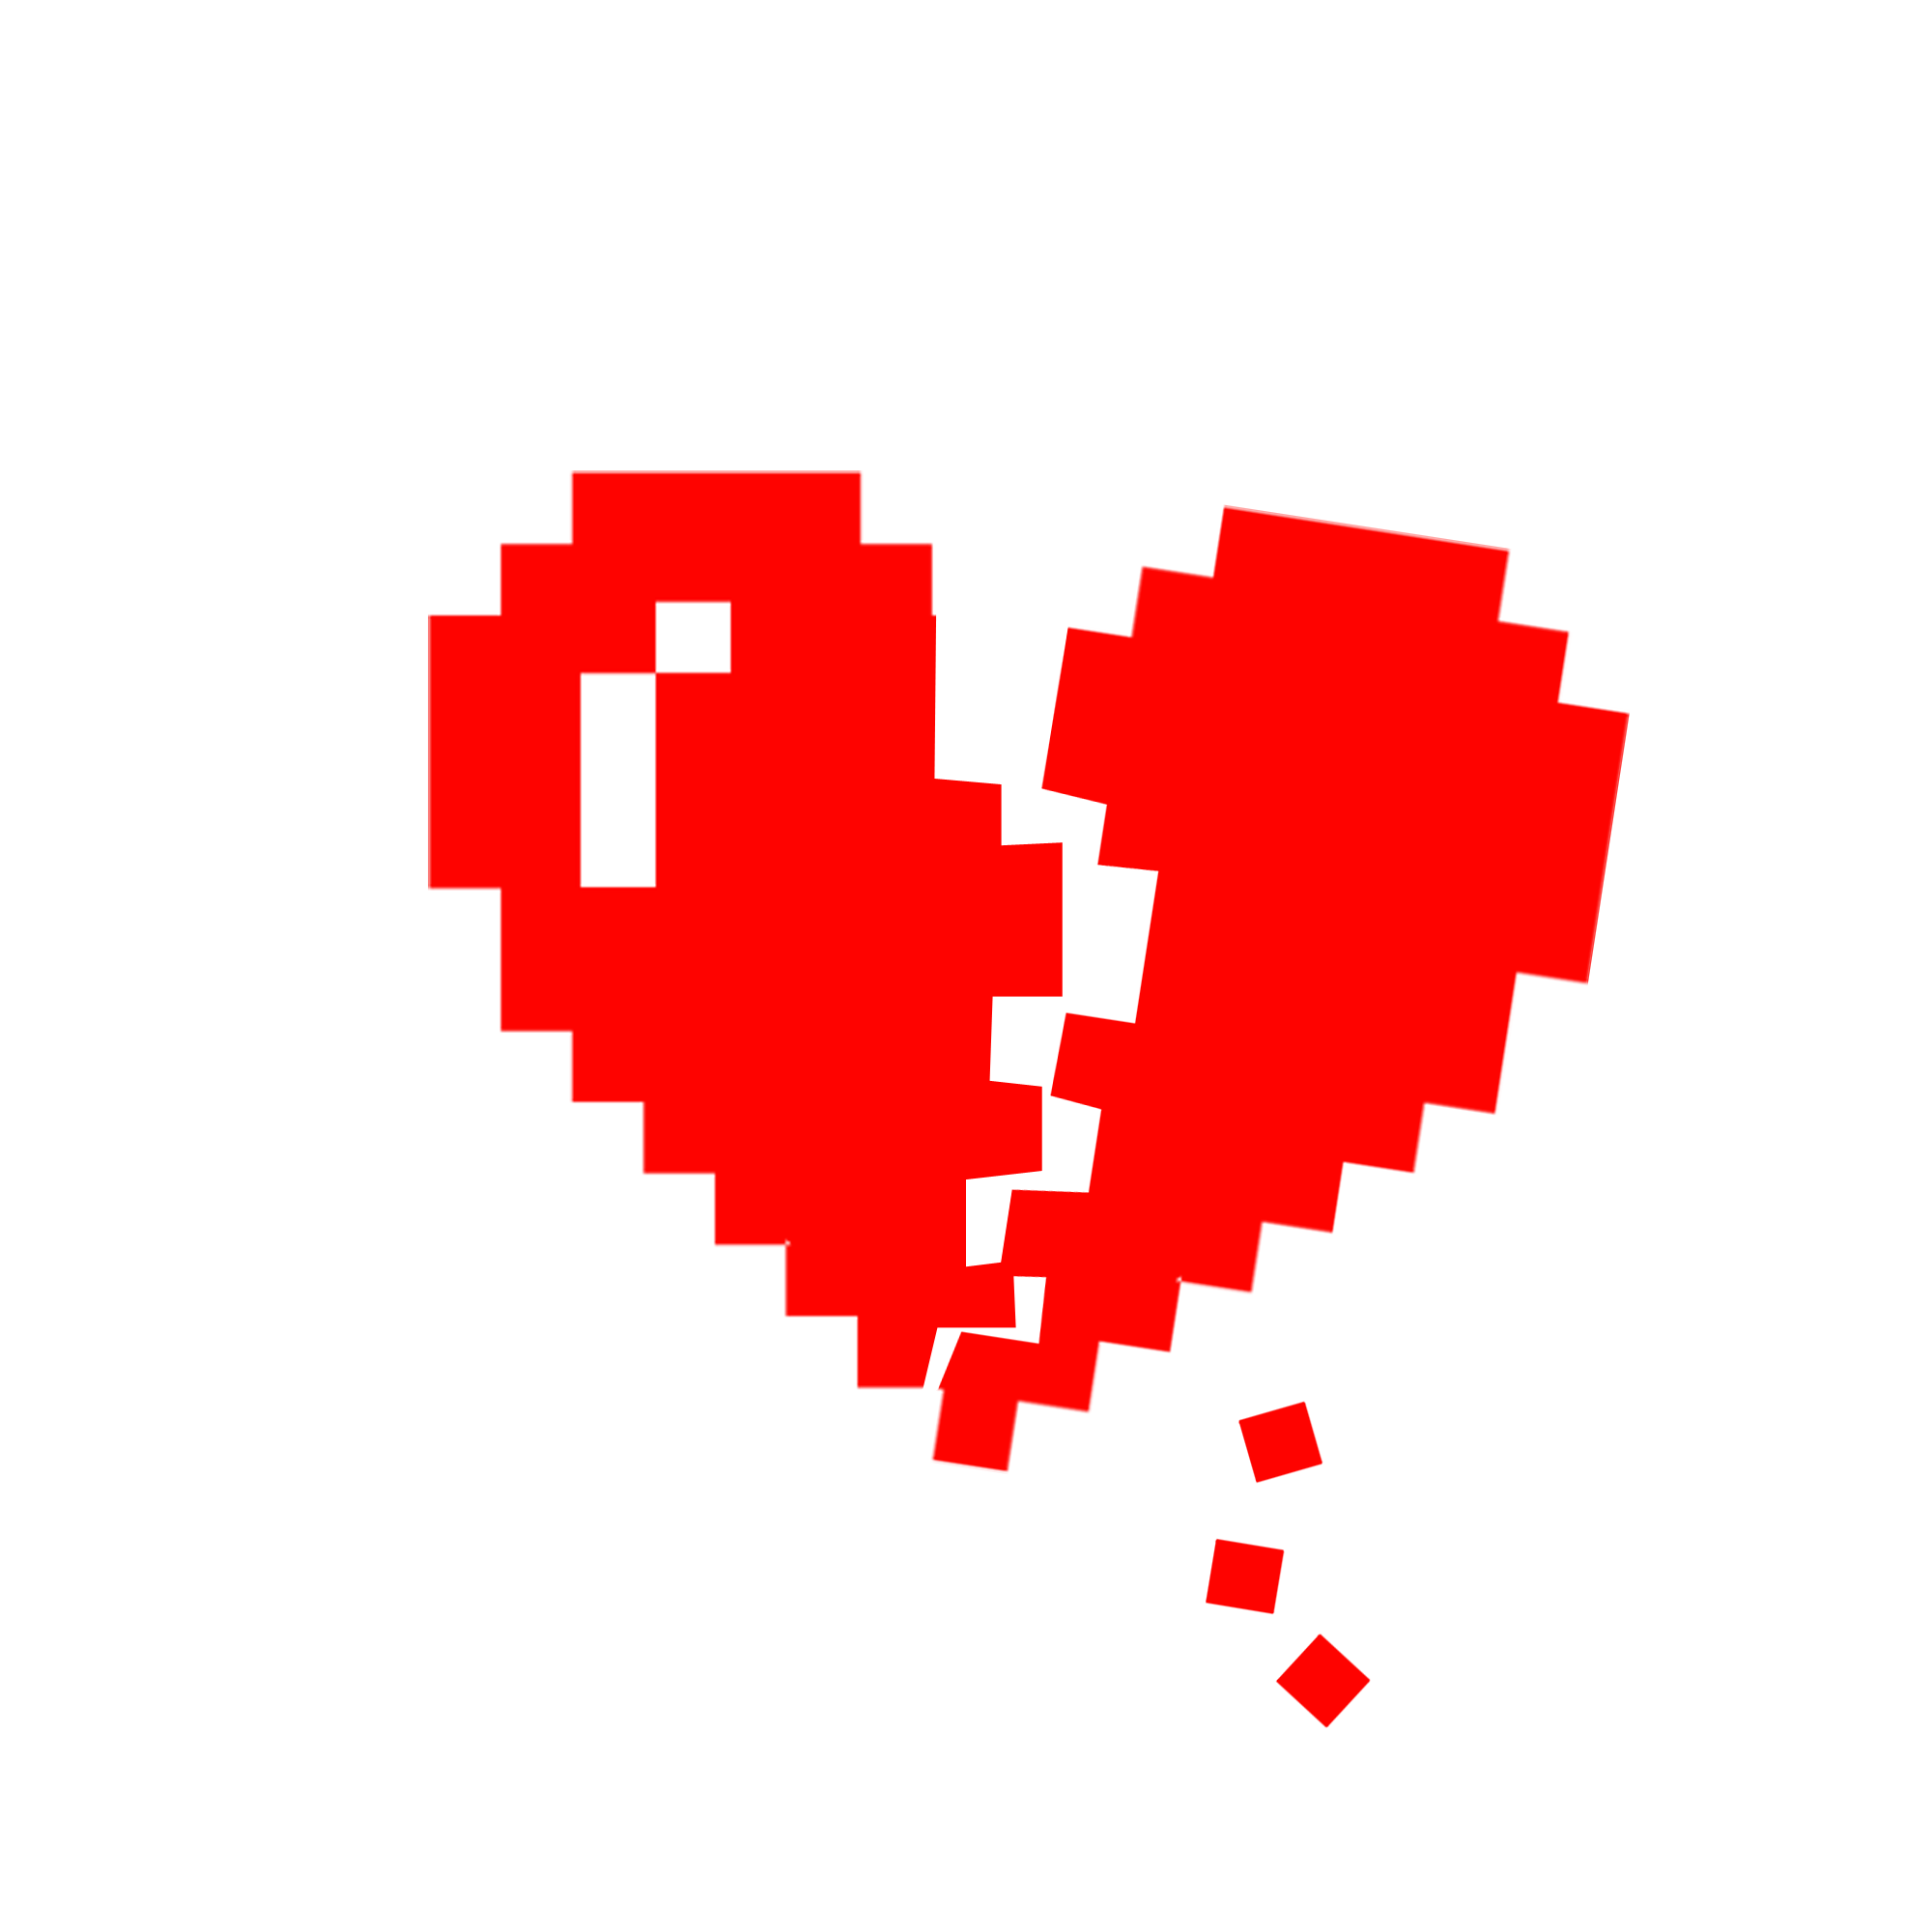 Broken Heart Pixel Art Maker free images, download Broken Heart Pixel Art.....